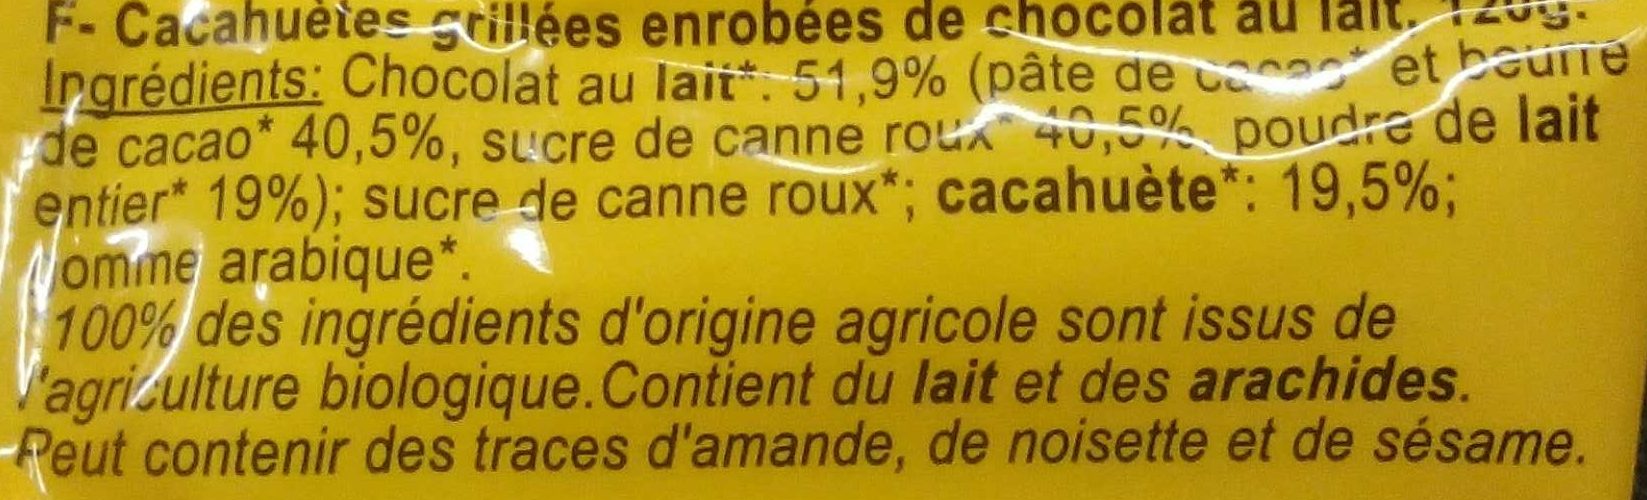 Les Drôles de Cacahuètes - Ingredients - fr